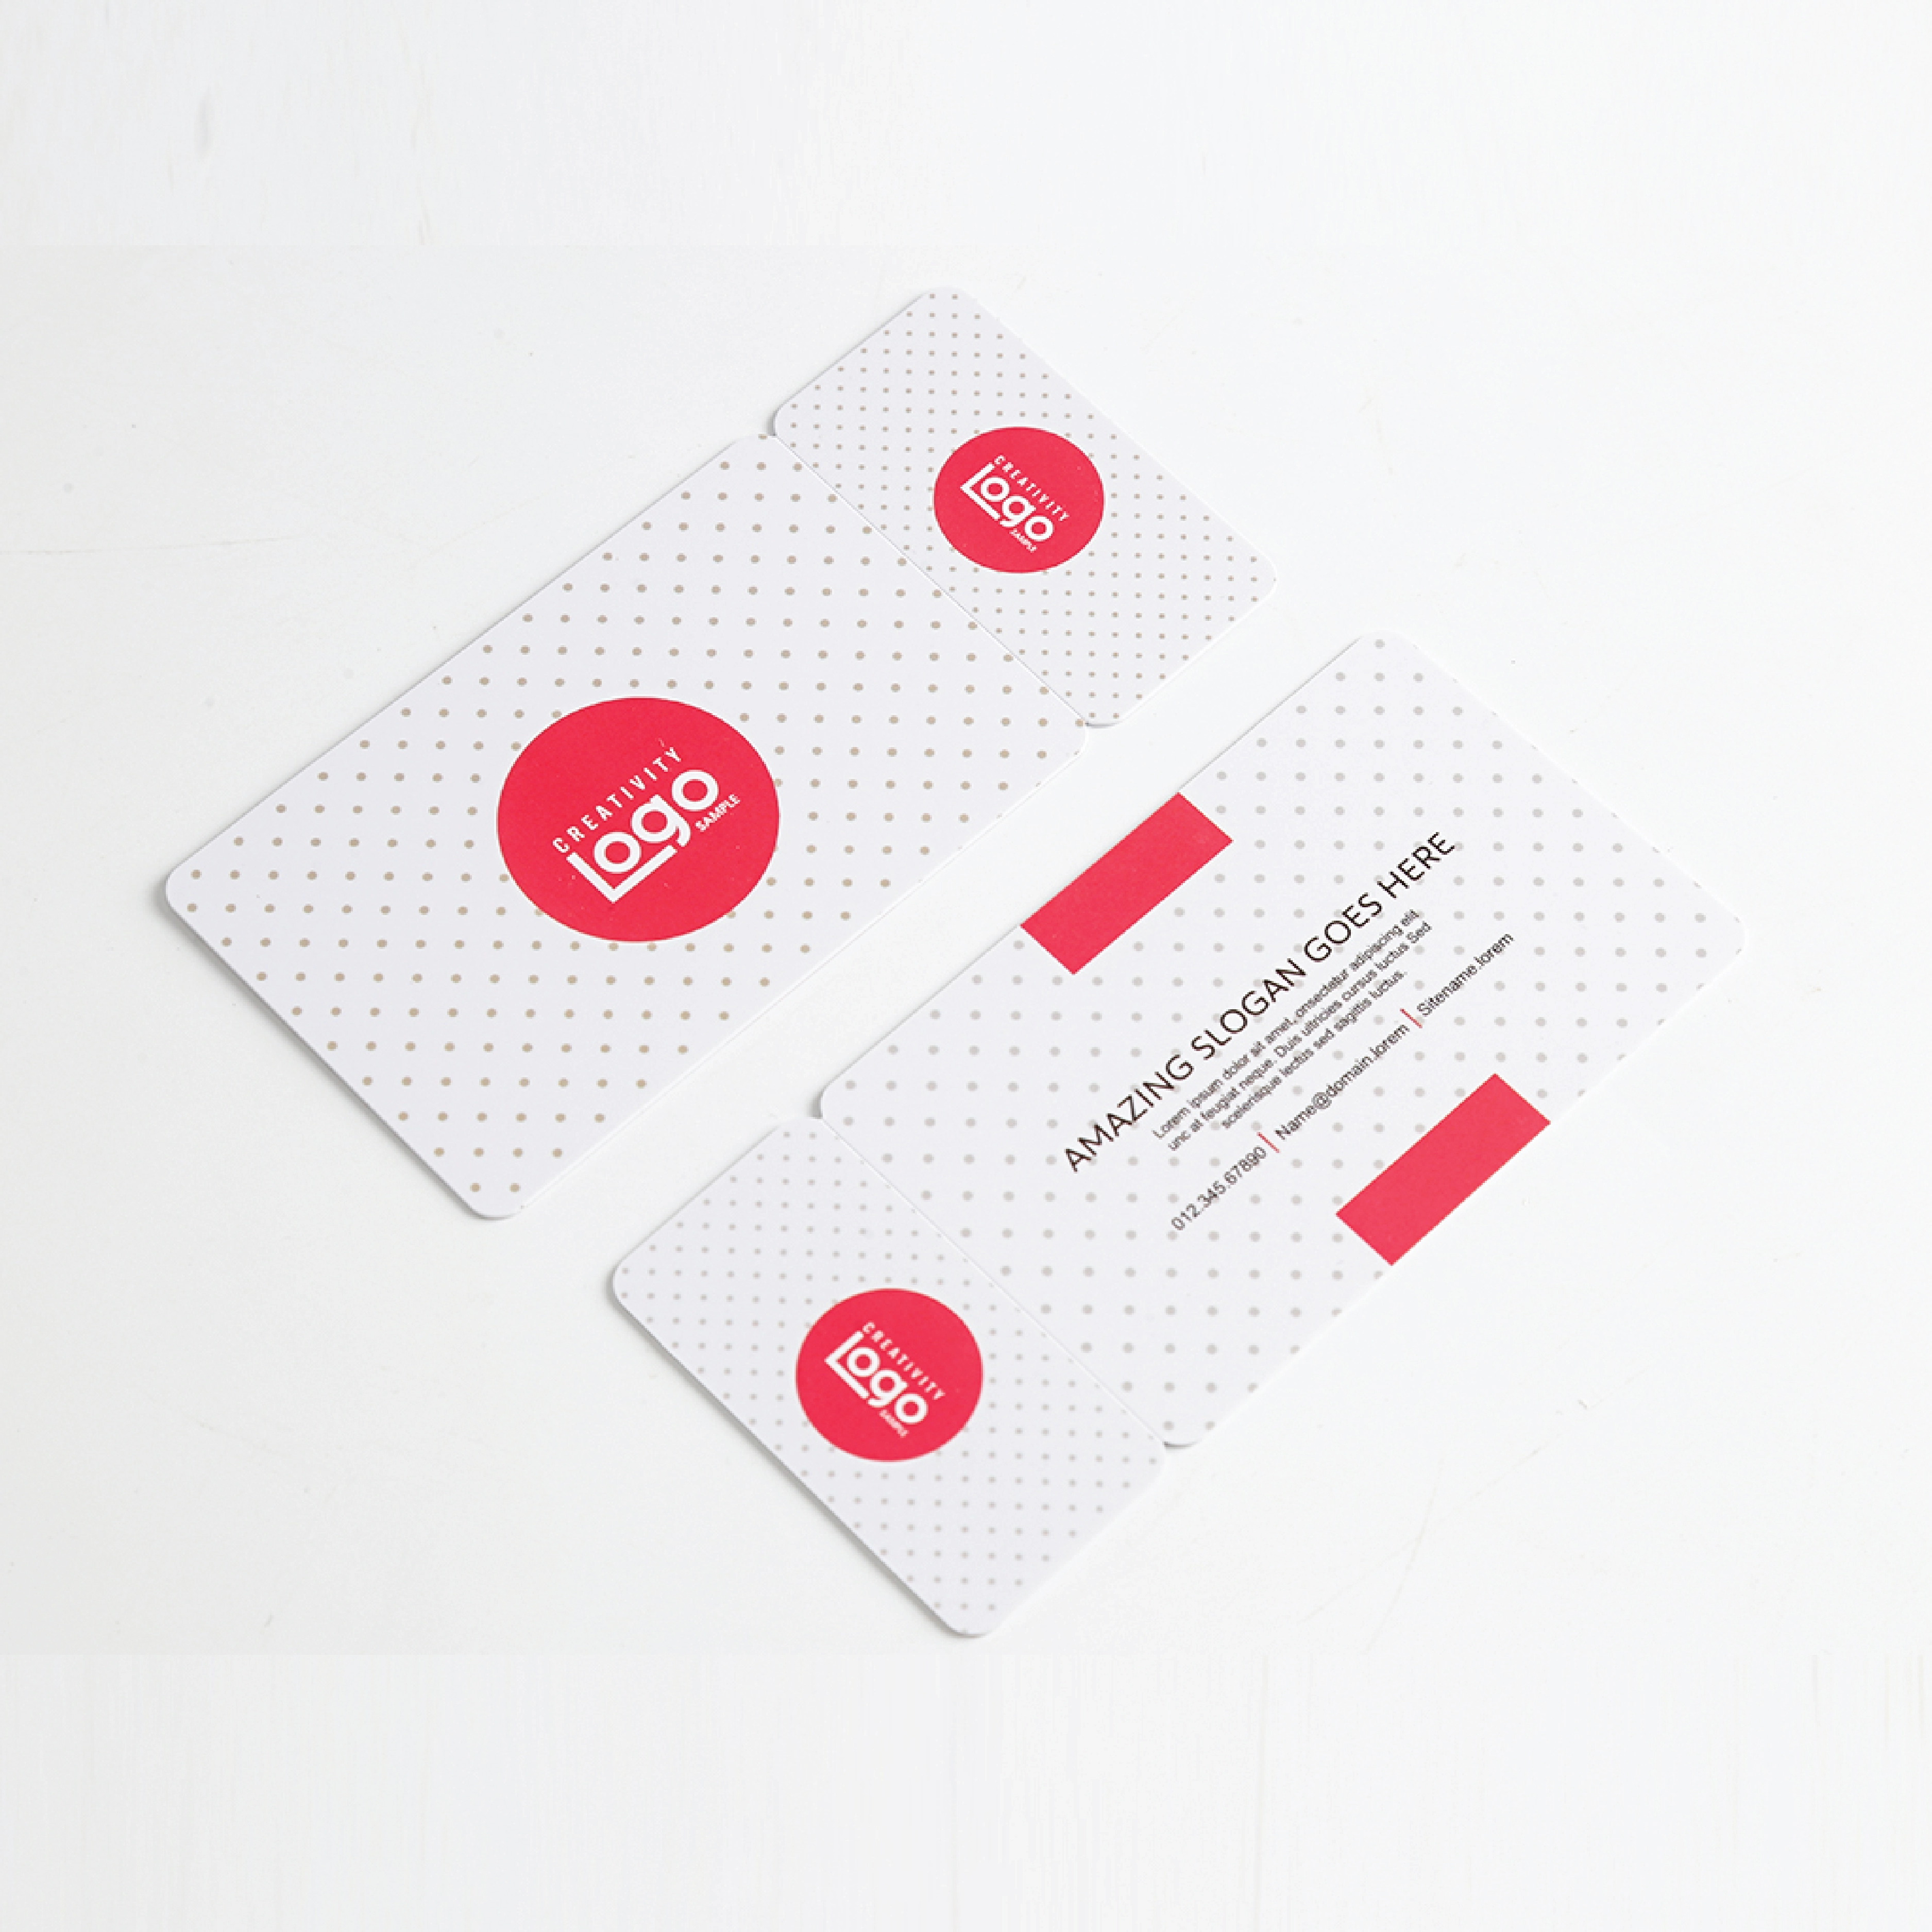 Πλαστικές σύνθετες κάρτες με ποικίλους διαδοχικούς γραμμωτούς κώδικες